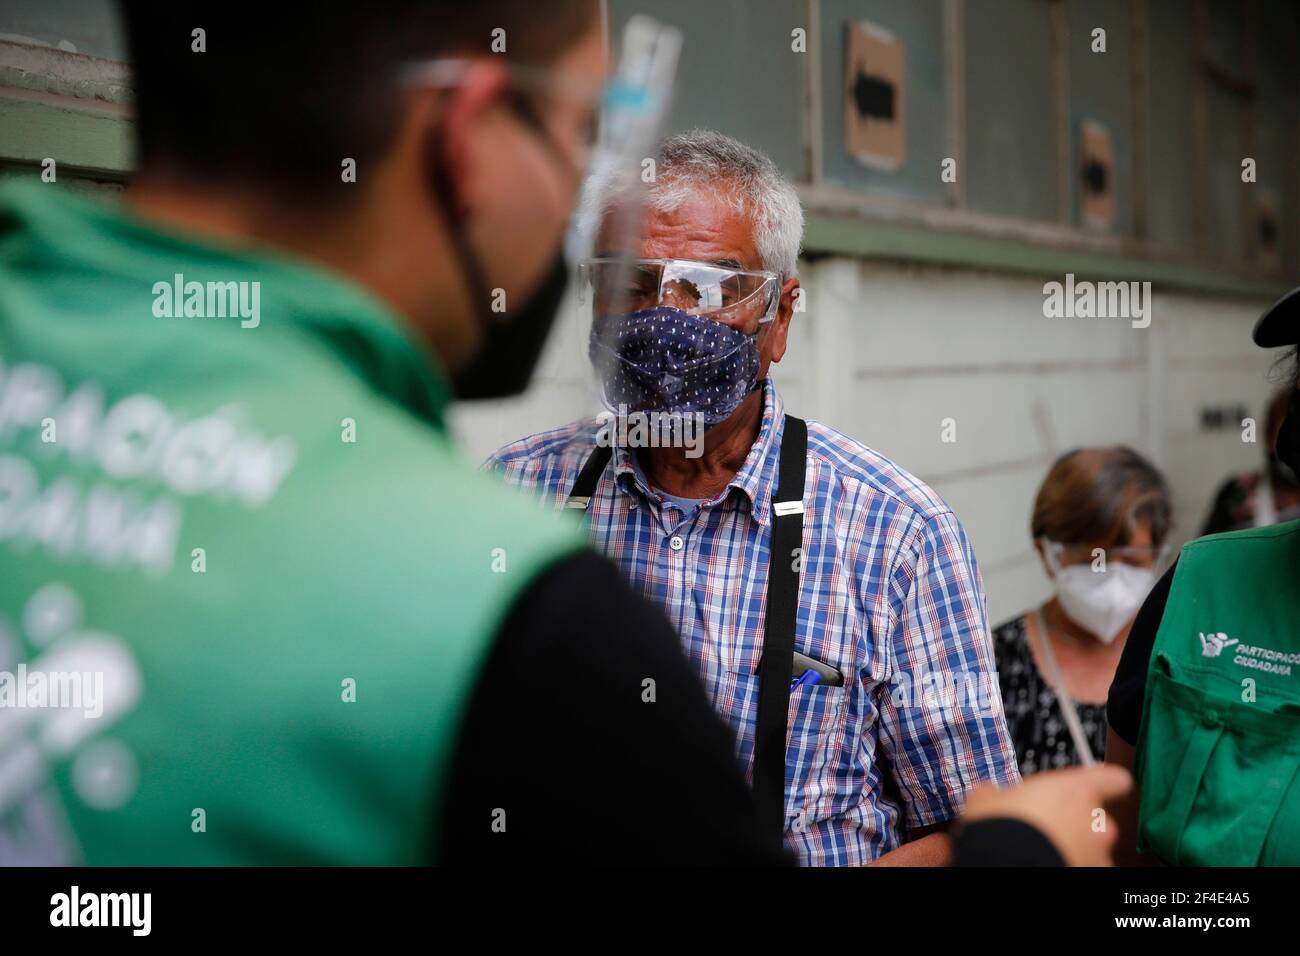 CIUDAD DE MÉXICO, MÉXICO - MARZO 18: Un anciano, durante el registro para poder recibir una dosis de la vacuna Covid-19, durante un programa de vacunación para personas mayores de 60 años, para inmunizar contra el SARS COV-2 que causa la enfermedad de Covid-19. El 18 de marzo de 2021 en la Ciudad de México, México CRÉDITO: Angel Morales Rizo/Grupo Eyepix/el acceso fotográfico Foto de stock